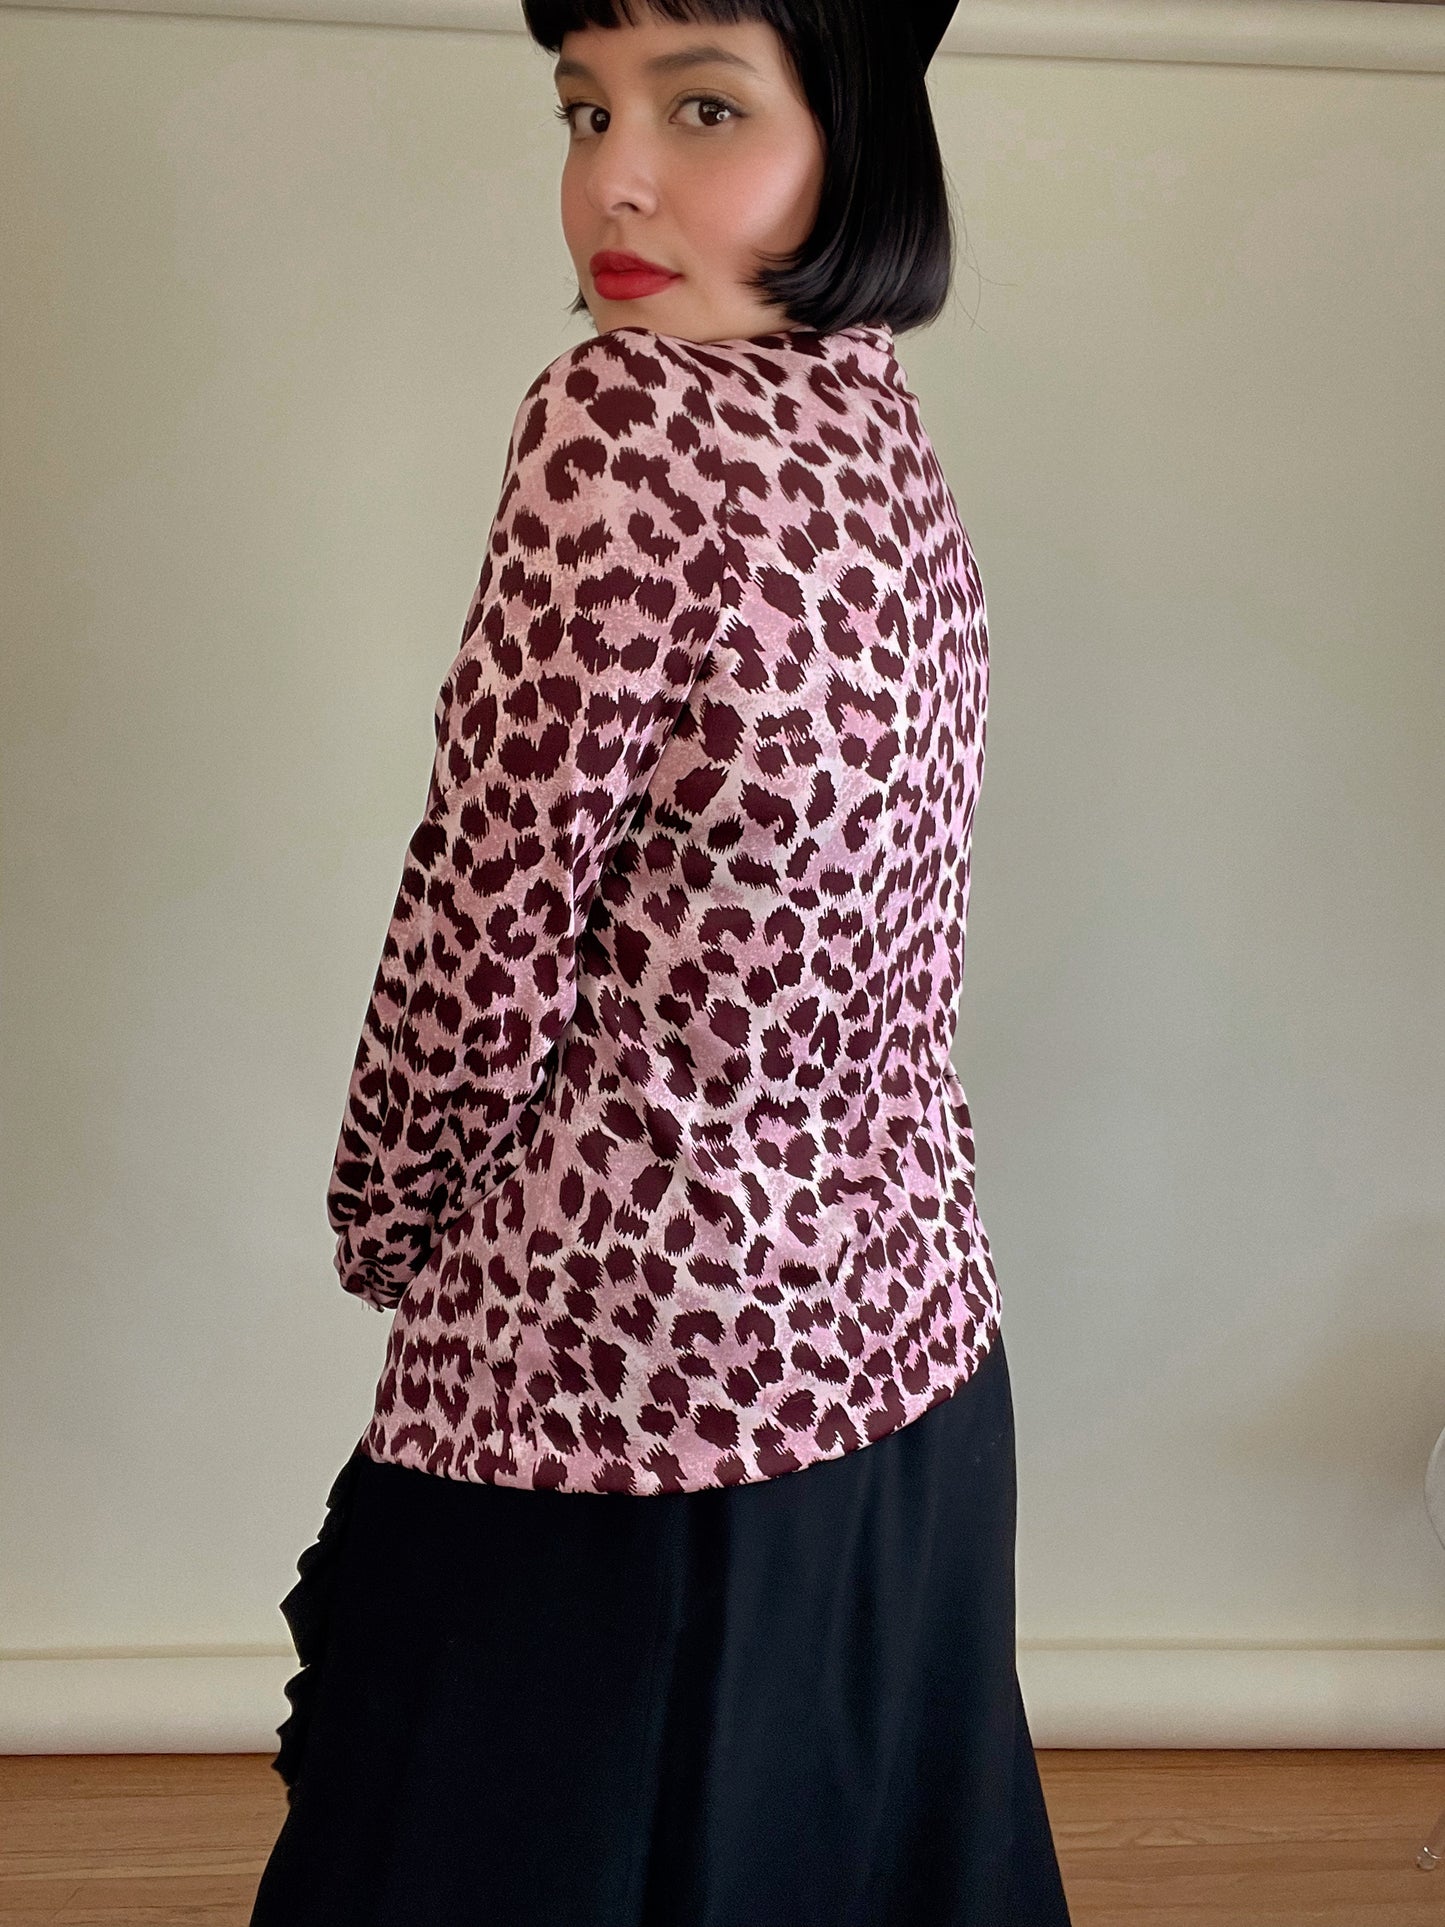 Vintage 60s "Trissi" Button Down Pink Leopard Print Blouse w/ Attached Neck Tie Best Fits Sizes XS-M